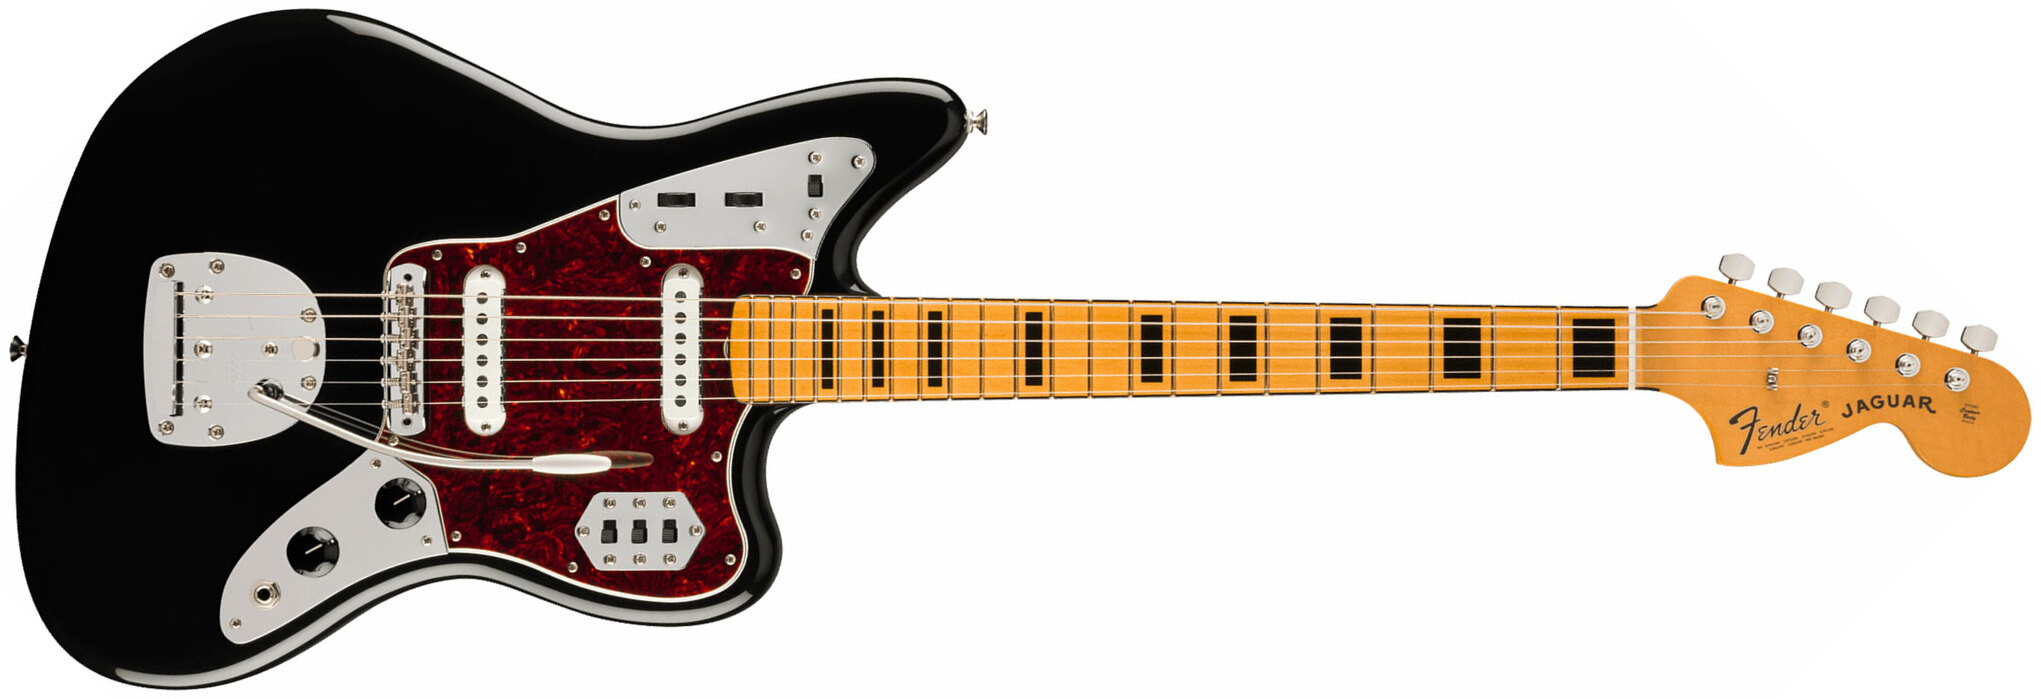 Fender Jaguar 70s Vintera 2 Mex 2s Trem Mn - Black - Retro rock electric guitar - Main picture